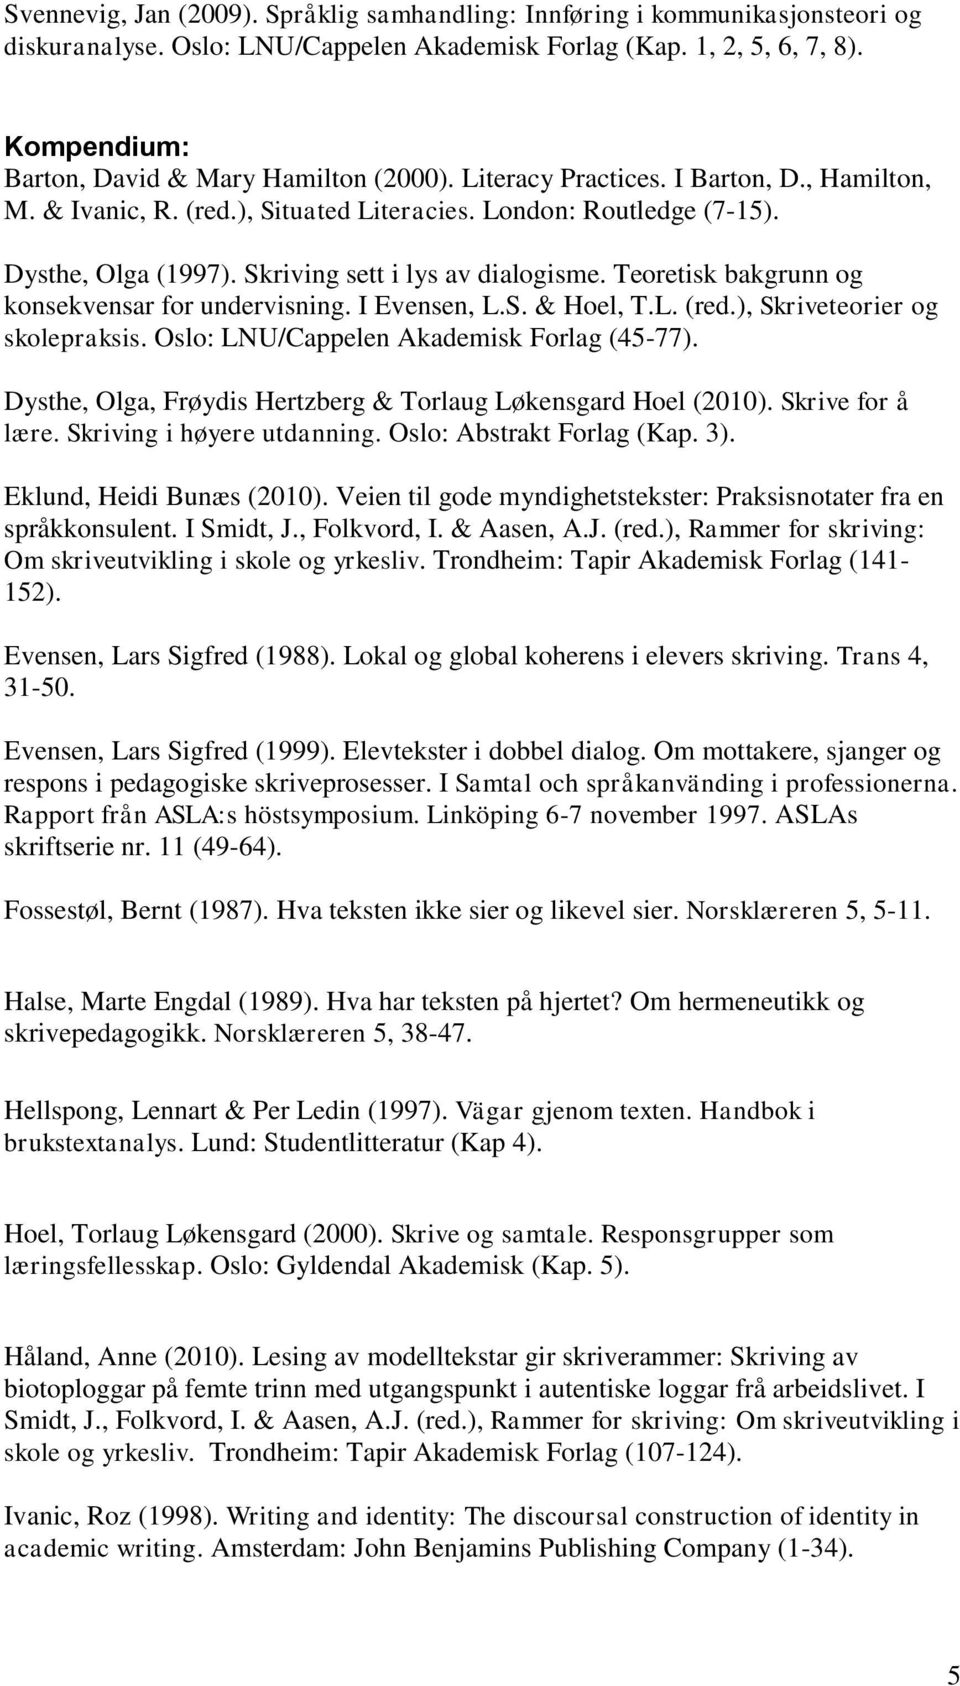 Skriving sett i lys av dialogisme. Teoretisk bakgrunn og konsekvensar for undervisning. I Evensen, L.S. & Hoel, T.L. (red.), Skriveteorier og skolepraksis. Oslo: LNU/Cappelen Akademisk Forlag (45-77).